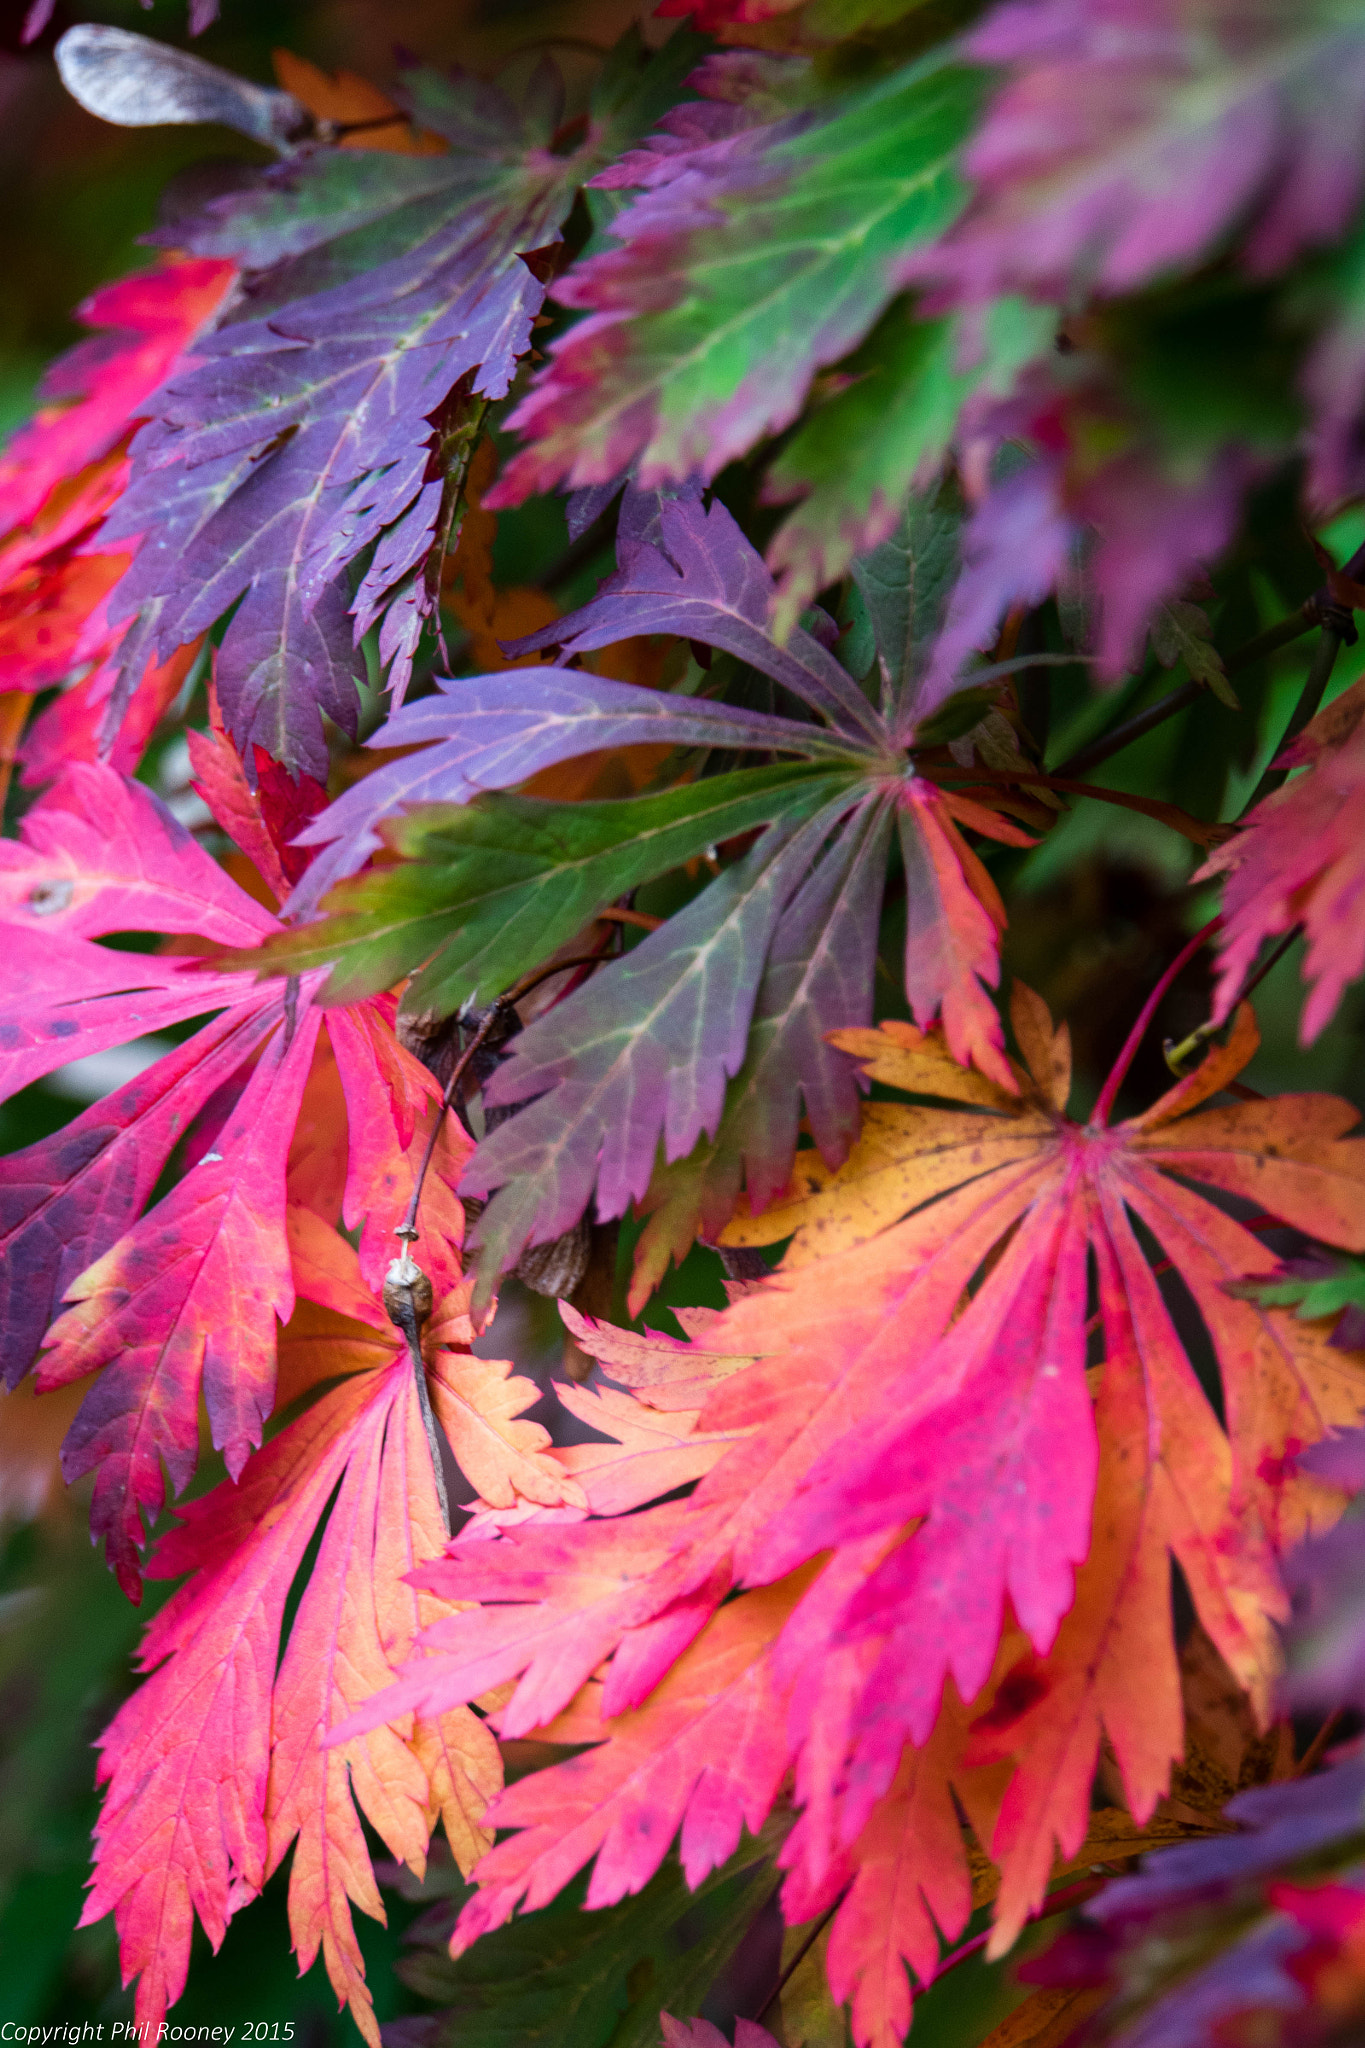 Sony a7R + Sony E 18-200mm F3.5-6.3 OSS sample photo. Autumn colour photography